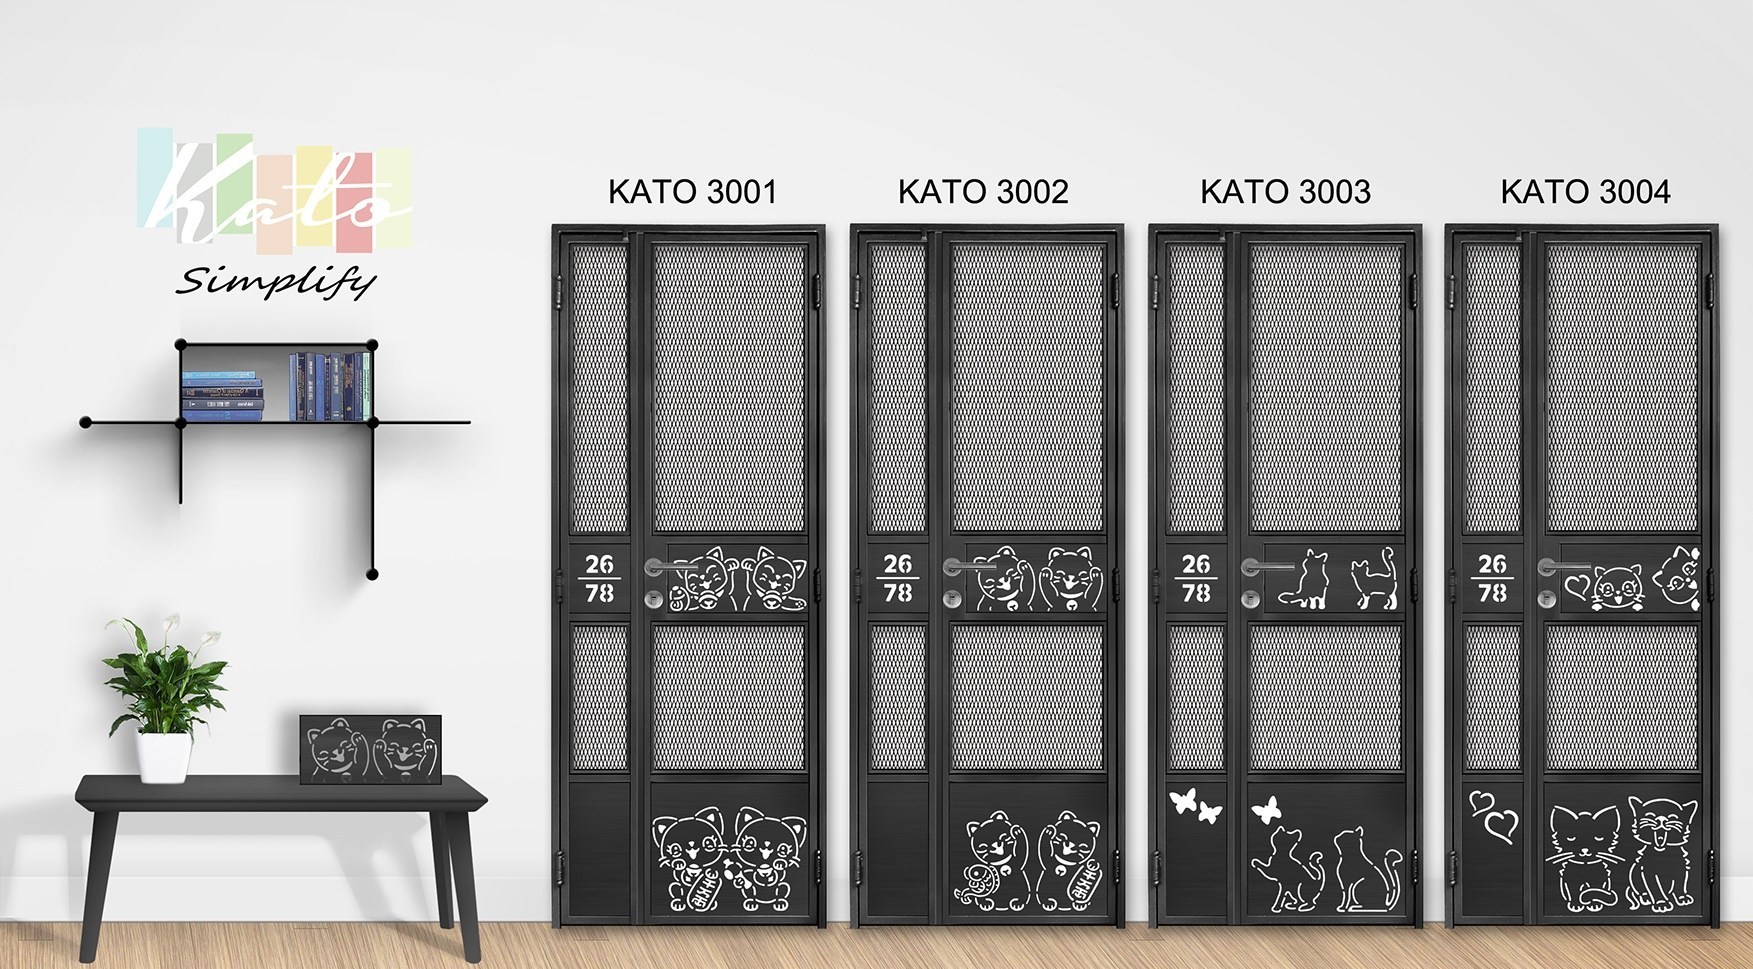 Buy Kato Simplify - HDB Gate @ My Digital Lock. Call 9067 7990